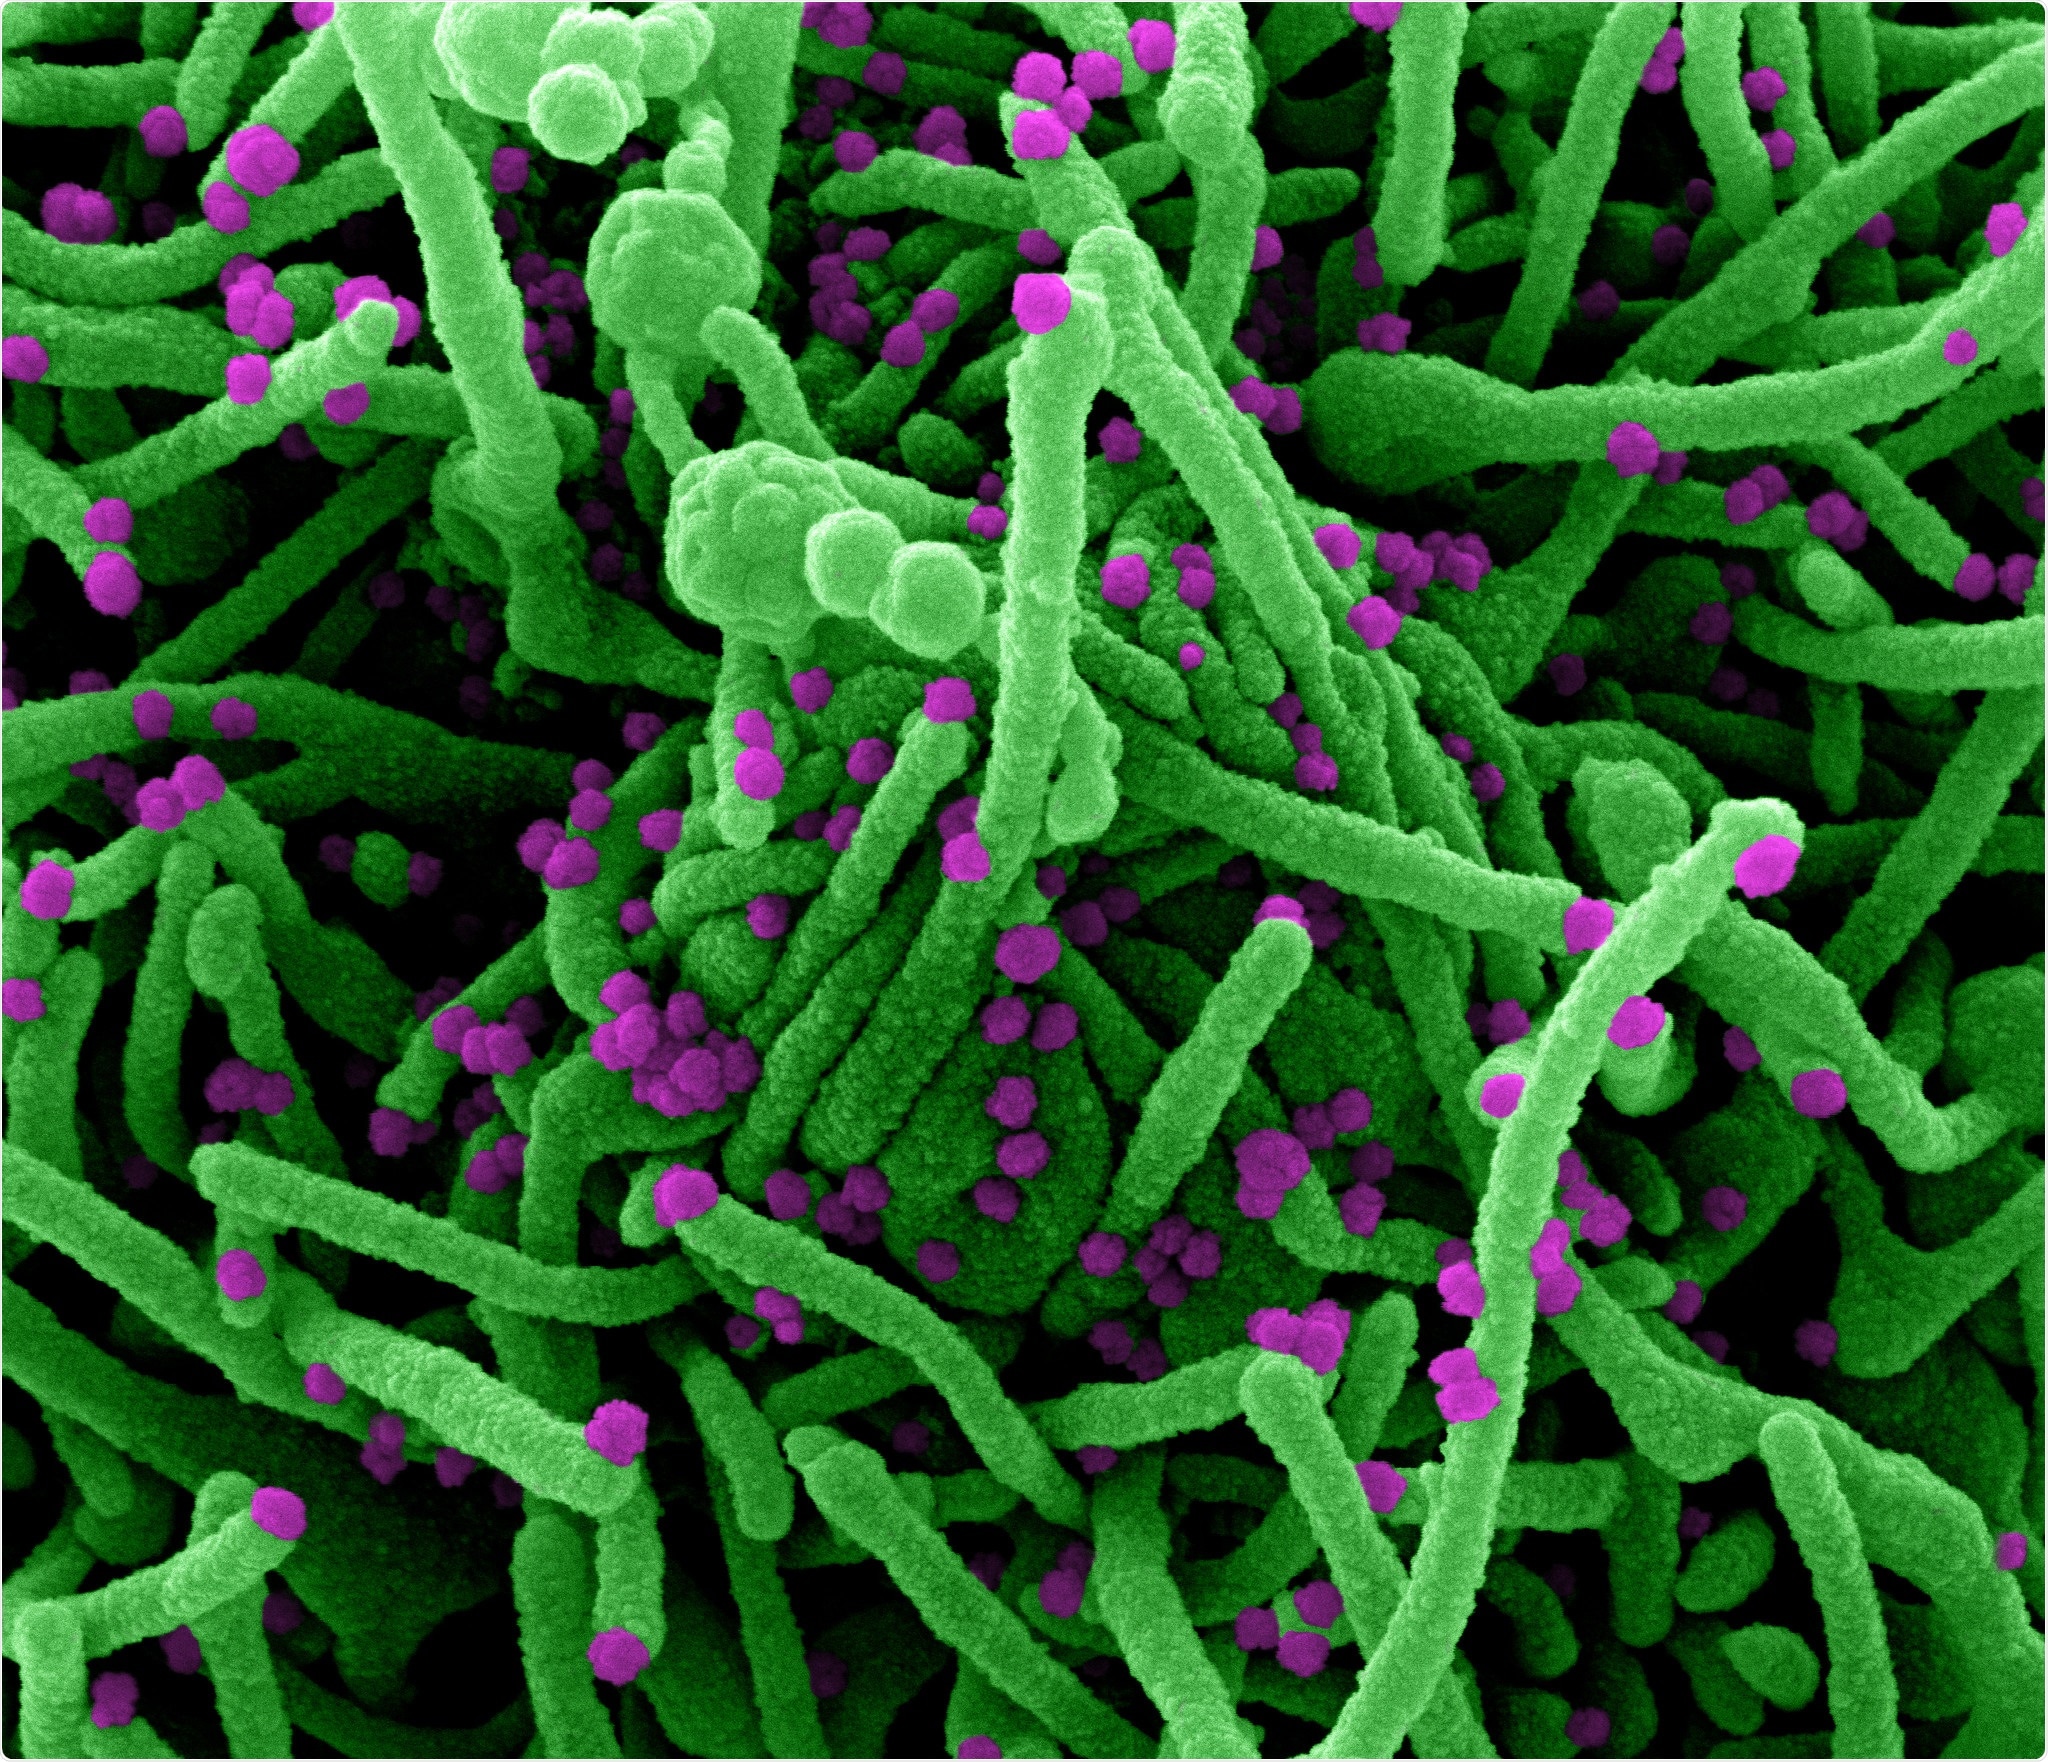 Micrografia de elétron da exploração de Colorized de uma pilha (verde) contaminada com as partículas do vírus SARS-CoV-2 (roxas), isoladas de uma amostra paciente. A imagem capturada no NIAID integrou a instalação de investigação no forte Detrick, Maryland. Crédito: NIAID